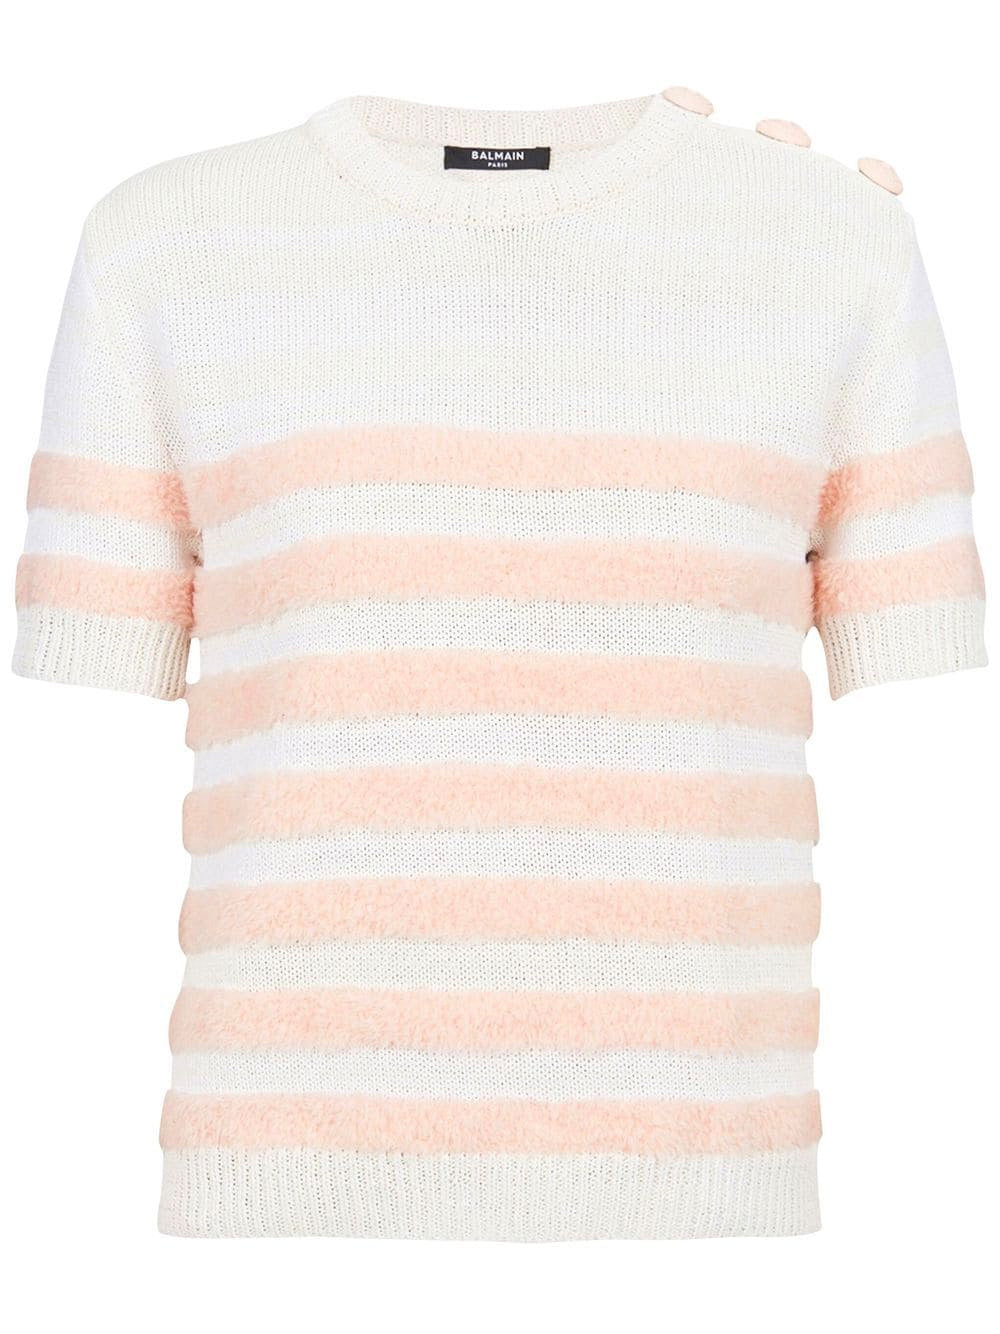 BALMAIN WOMEN Striped Knit Top Pink/White - MAISONDEFASHION.COM